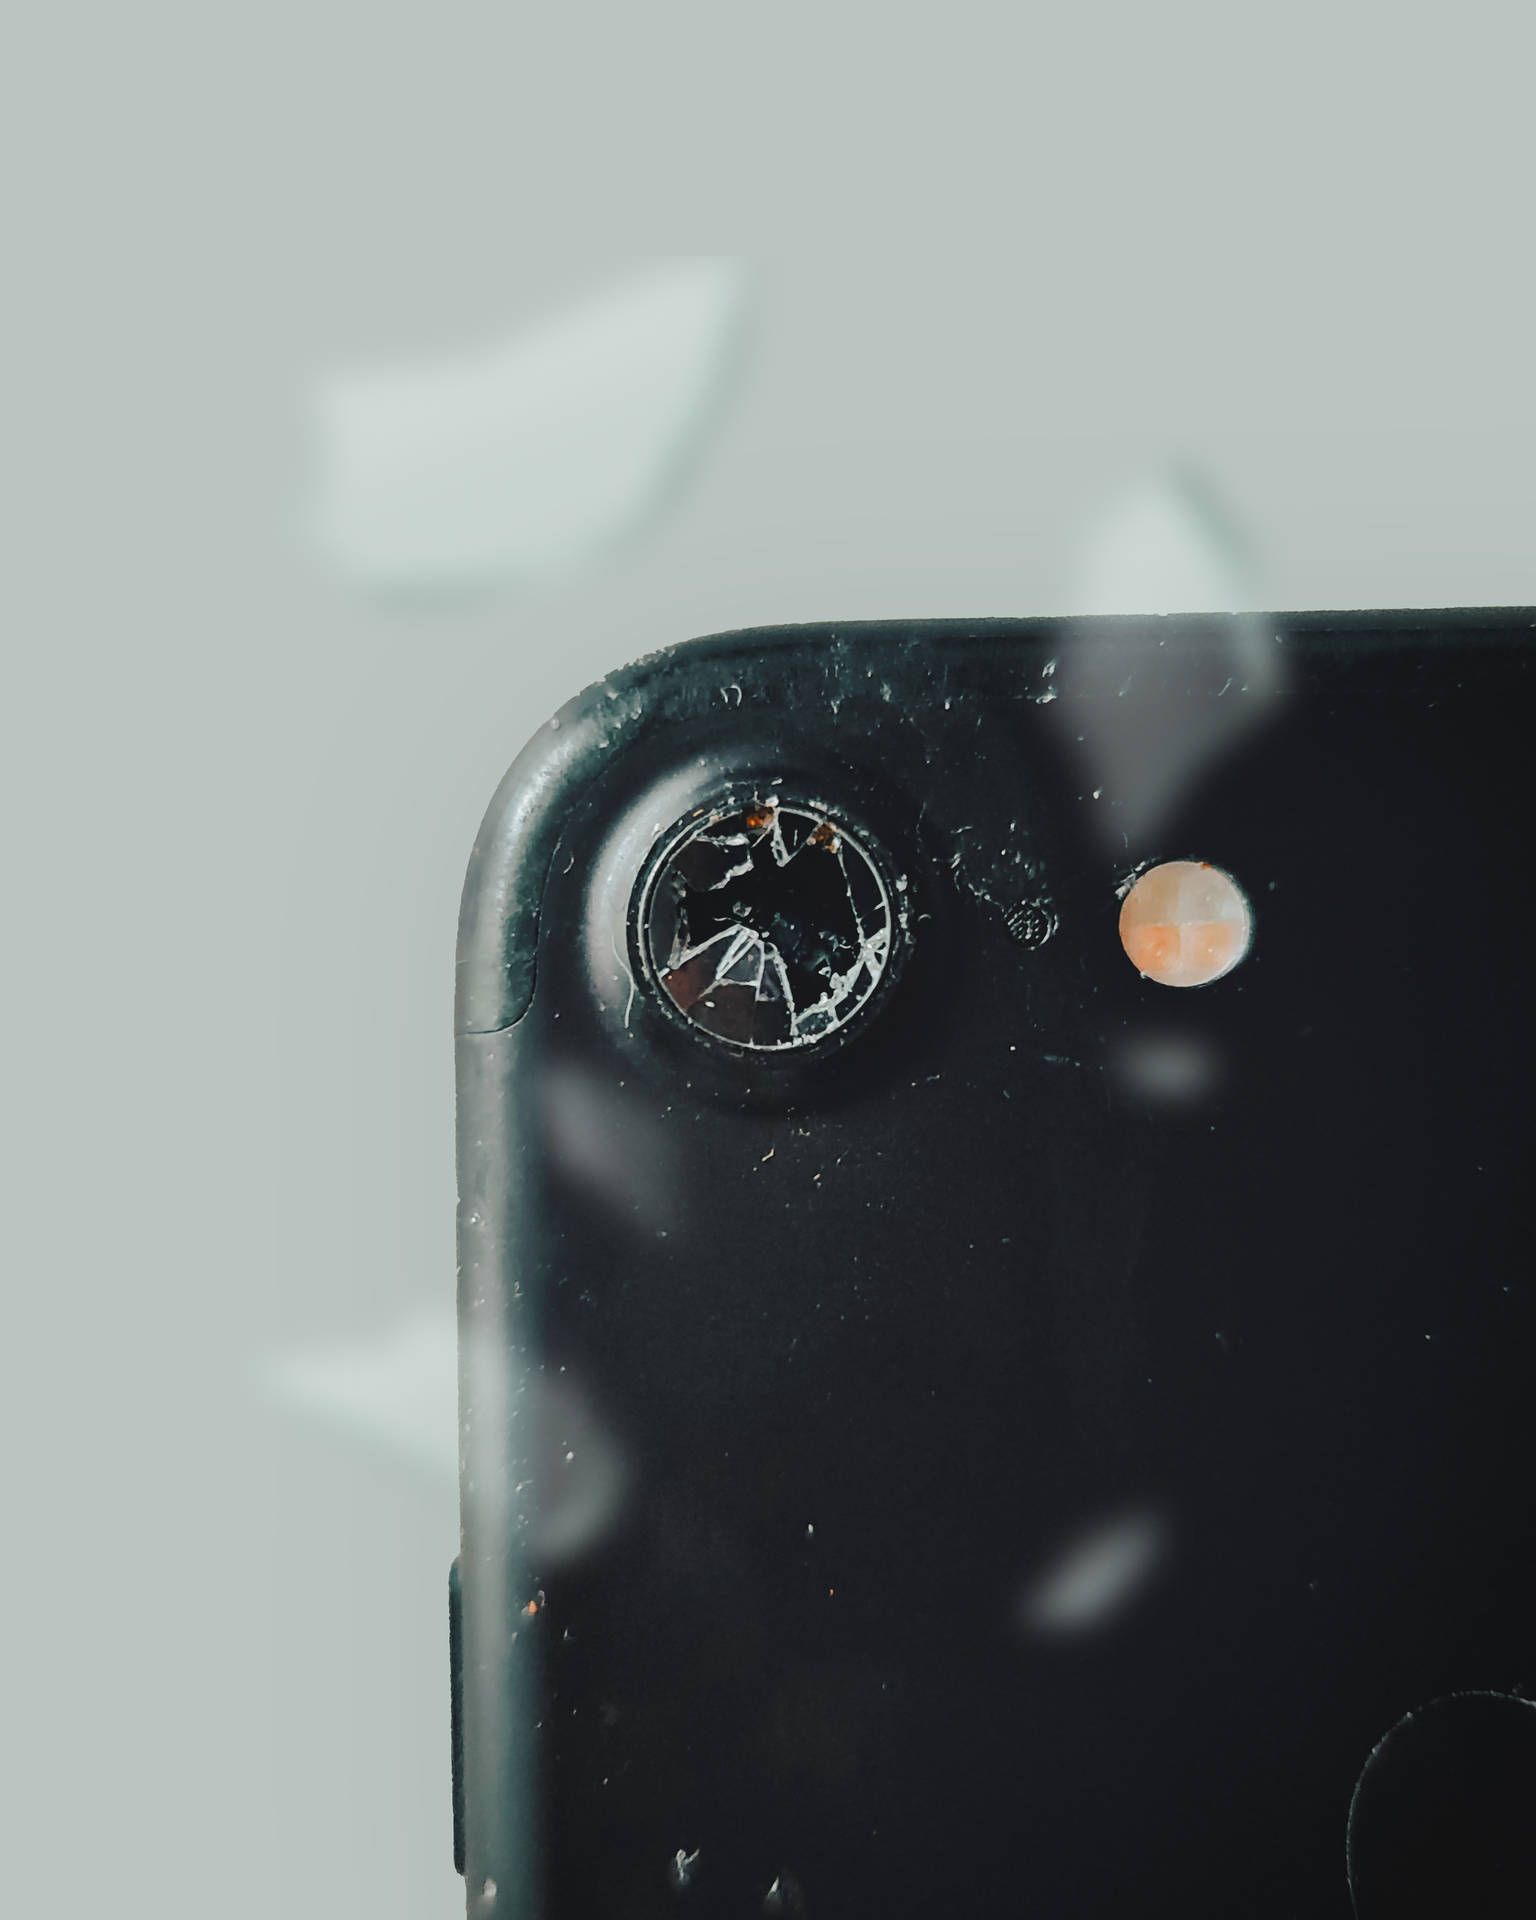 Broken Phone Camera Lens